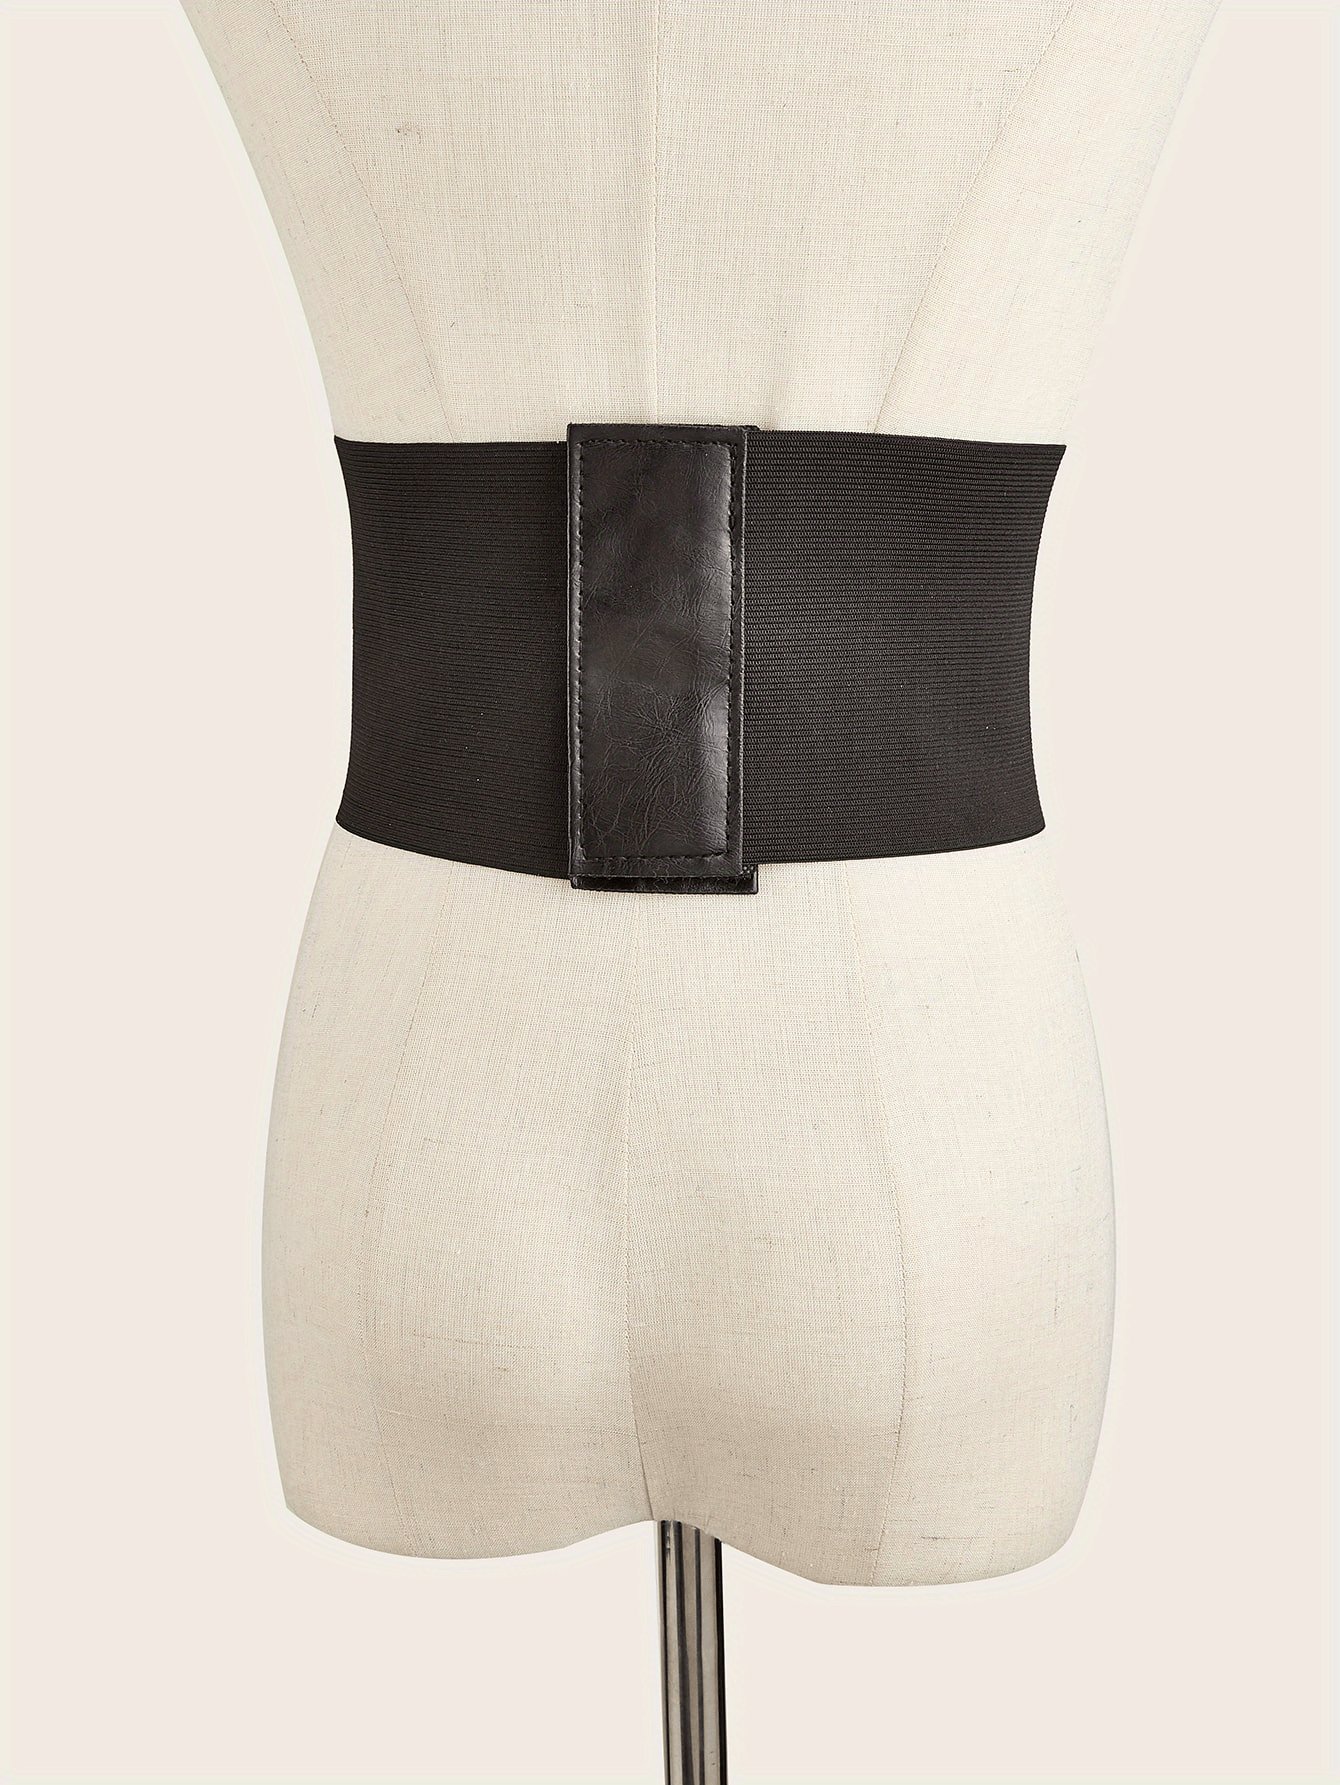 HANERDUN Lace-up Waspie Corset Belts for Women Elastic Waist Belt